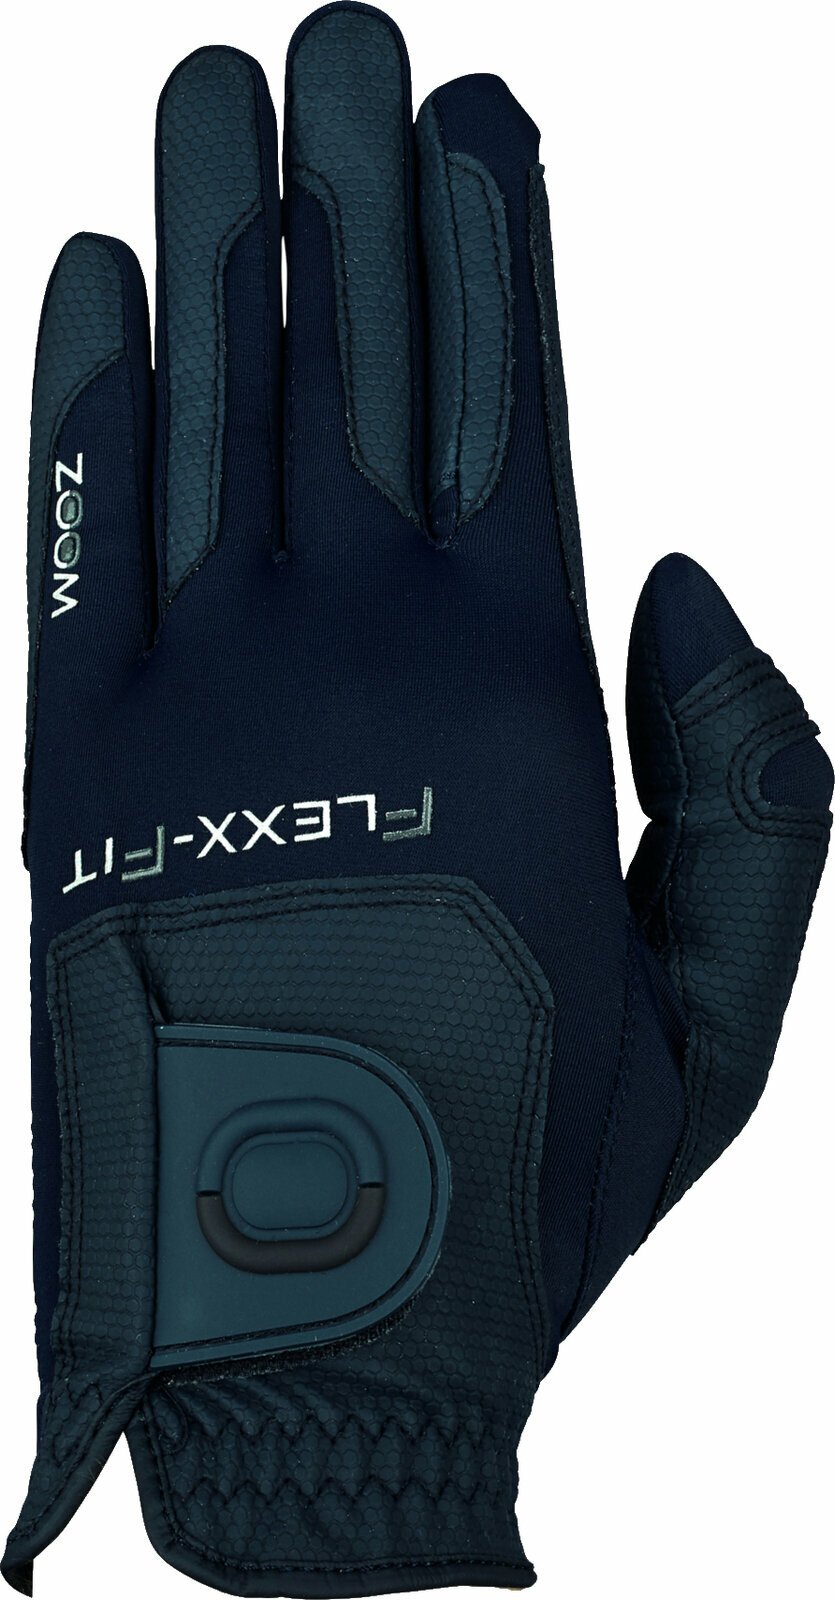 Gloves Zoom Gloves Weather Style Junior Golf Glove Navy LH